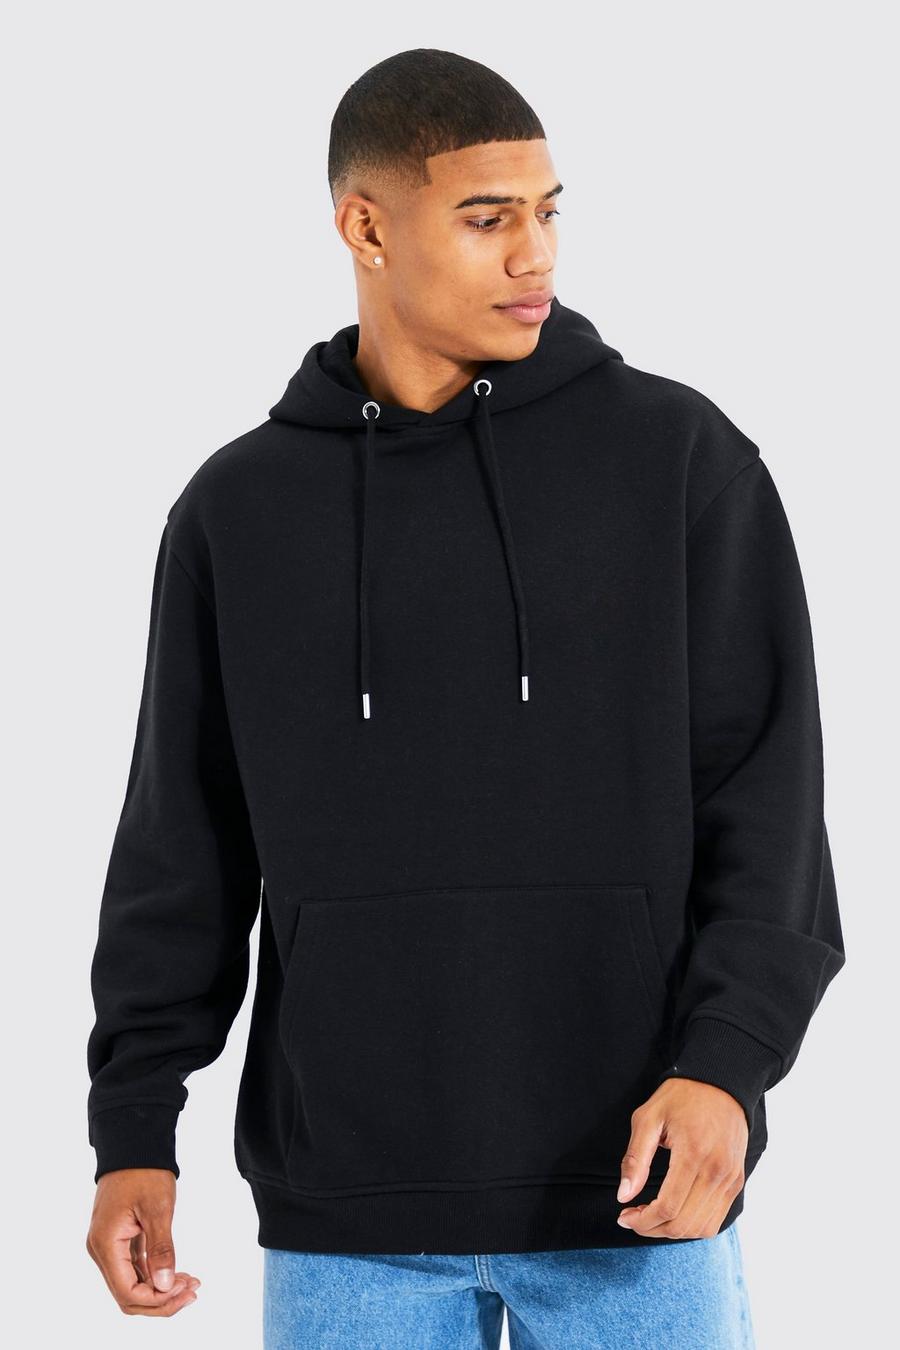 Schwarz XL Rabatt 60 % HERREN Pullovers & Sweatshirts Hoodie GOSSENGOLD sweatshirt 